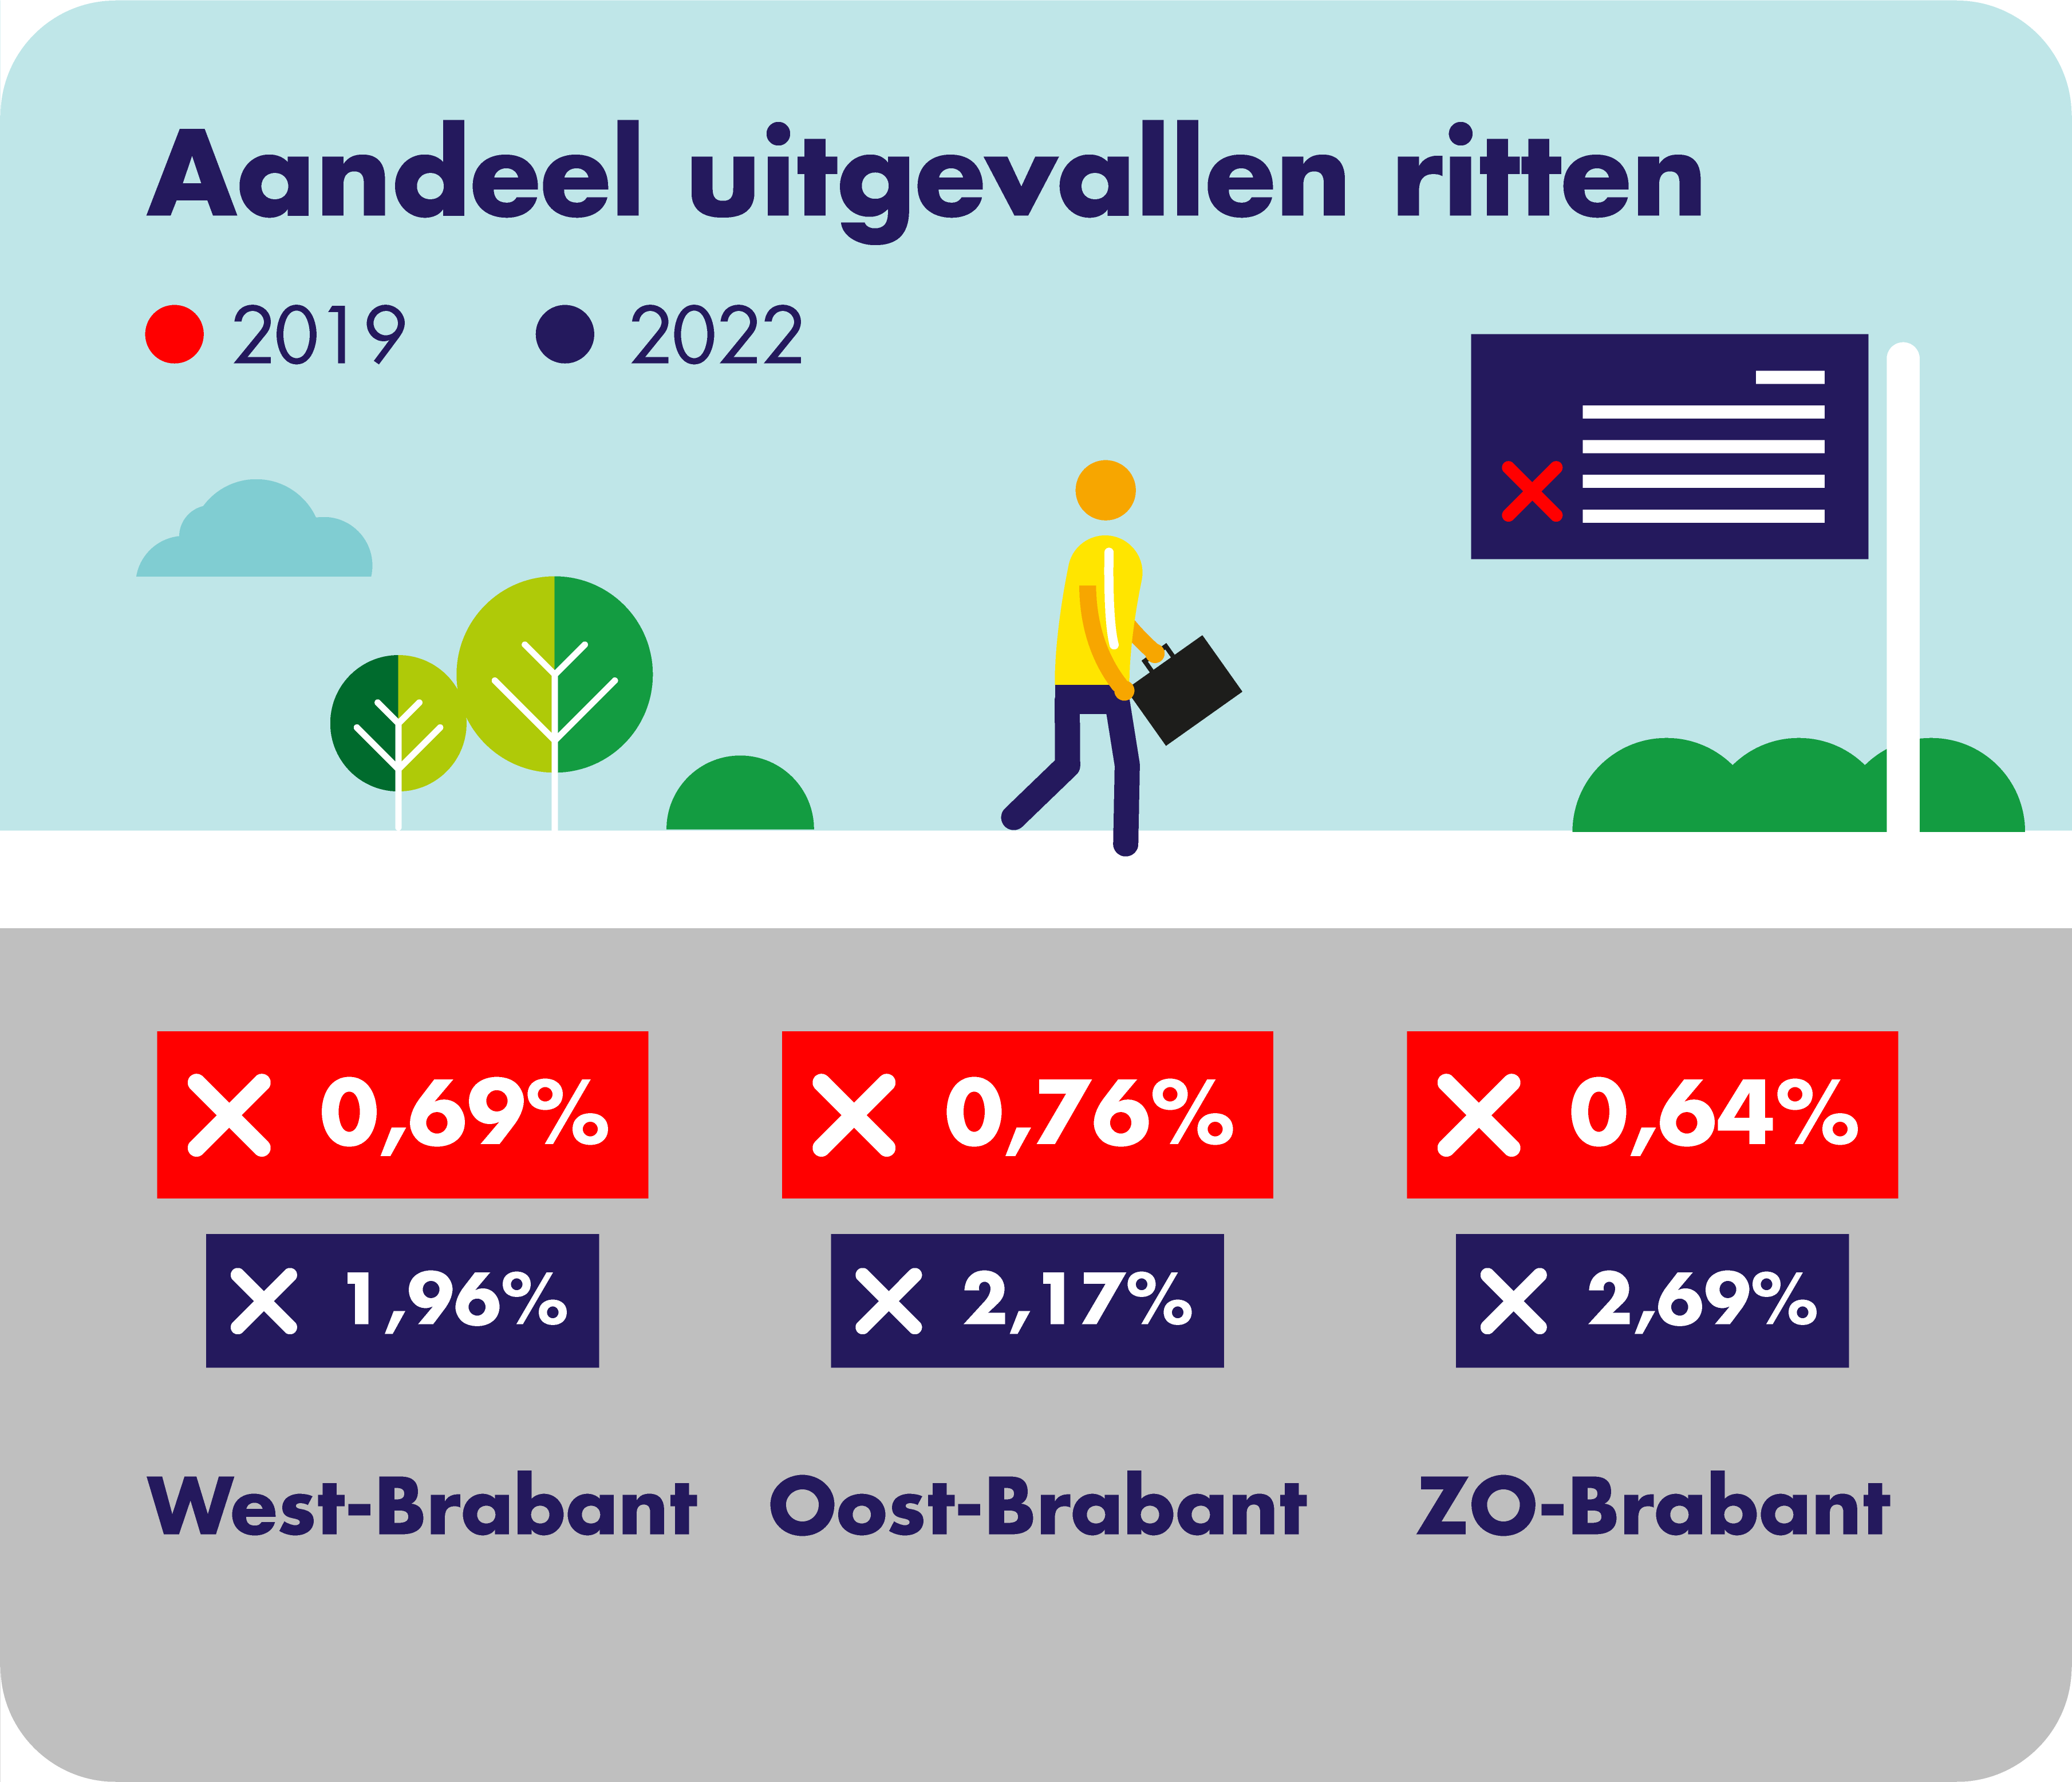 Op deze afbeelding wordt per concessiegebied het aandeel geheel of gedeeltelijk uitgevallen ritten in 2019 en 2022 weergegeven ten opzichte van het totaal aantal geplande ritten. In West-Brabant is in 2019 0,69% van de geplande ritten uitgevallen en in 2022 1,96%. In Oost-Brabant is in 2019 0,76% van de geplande ritten uitgevallen en in 2022 2,17%. In Zuidoost-Brabant is in 2019 0,64% van de geplande ritten uitgevallen en in 2022 2,69%.